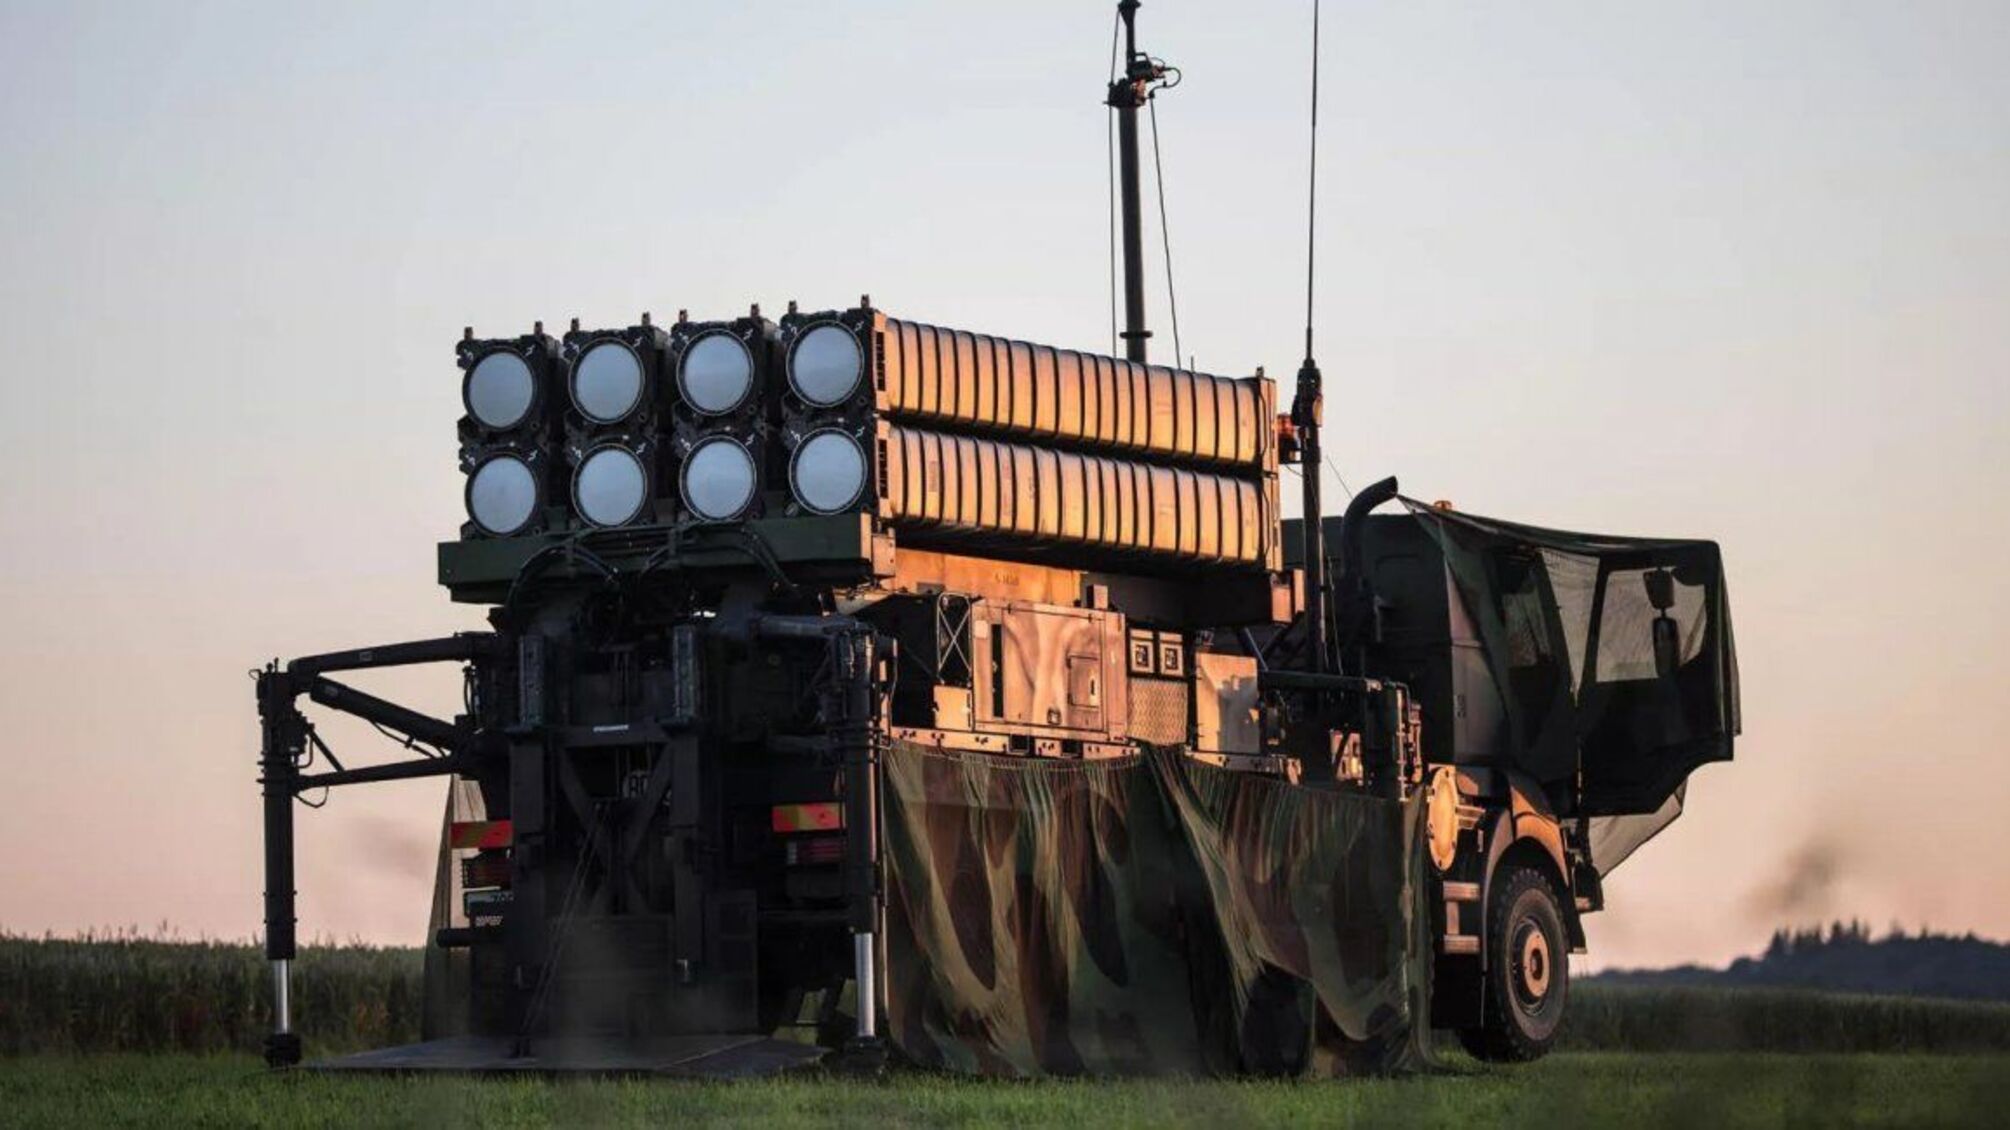 Первый SAMP-T прибыл в Украину: что это за противоракетная система и каково ее назначение на поле боя, – СМИ